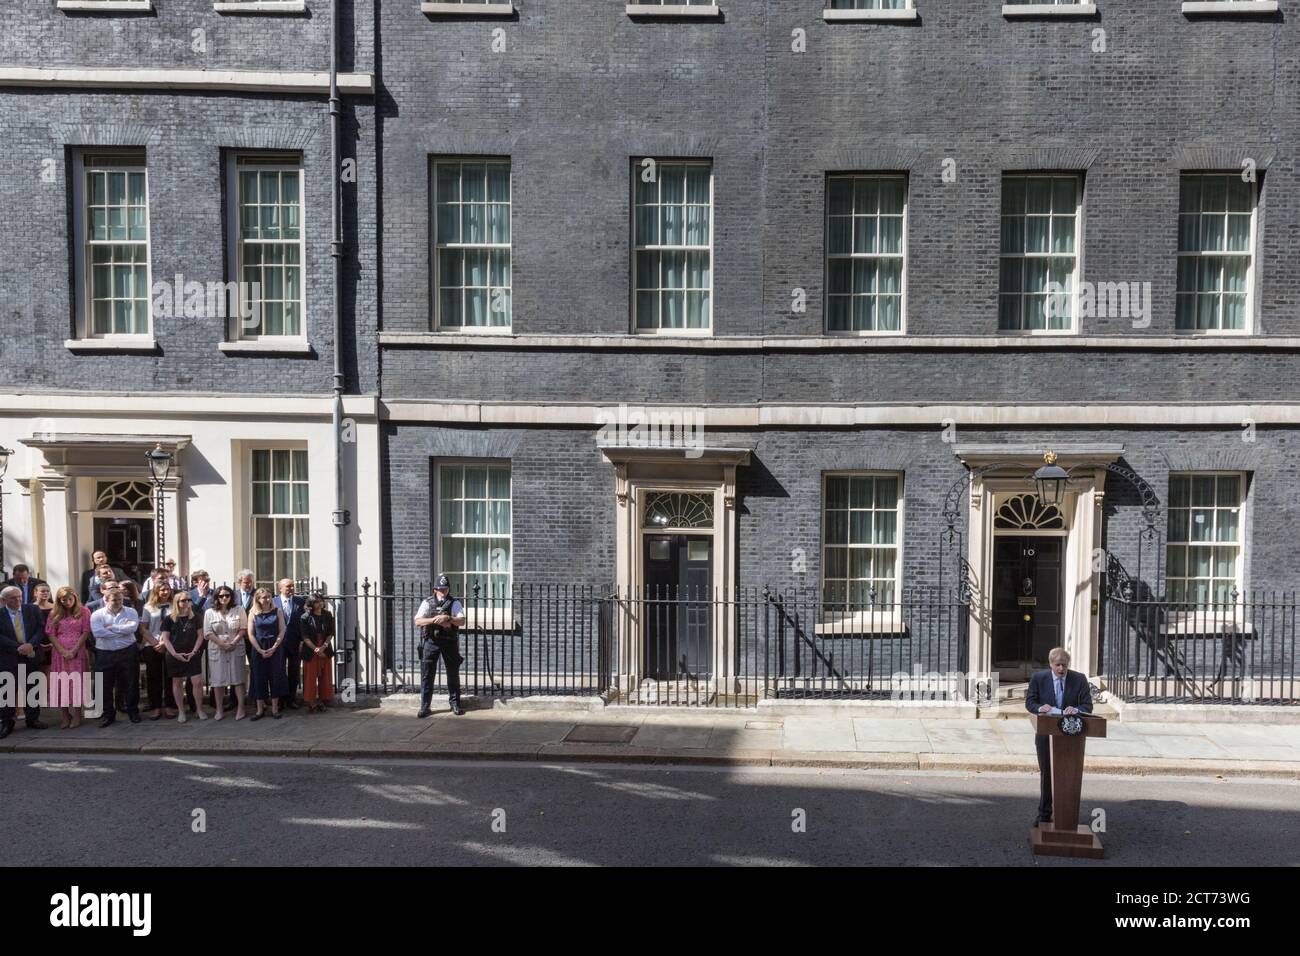 Il primo ministro Boris Johnson ha pronunciato il suo primo discorso come PM al di fuori del n. 10 Downing Street con il personale che guarda a Westminster, 24 luglio 2019, Londra, Regno Unito Foto Stock